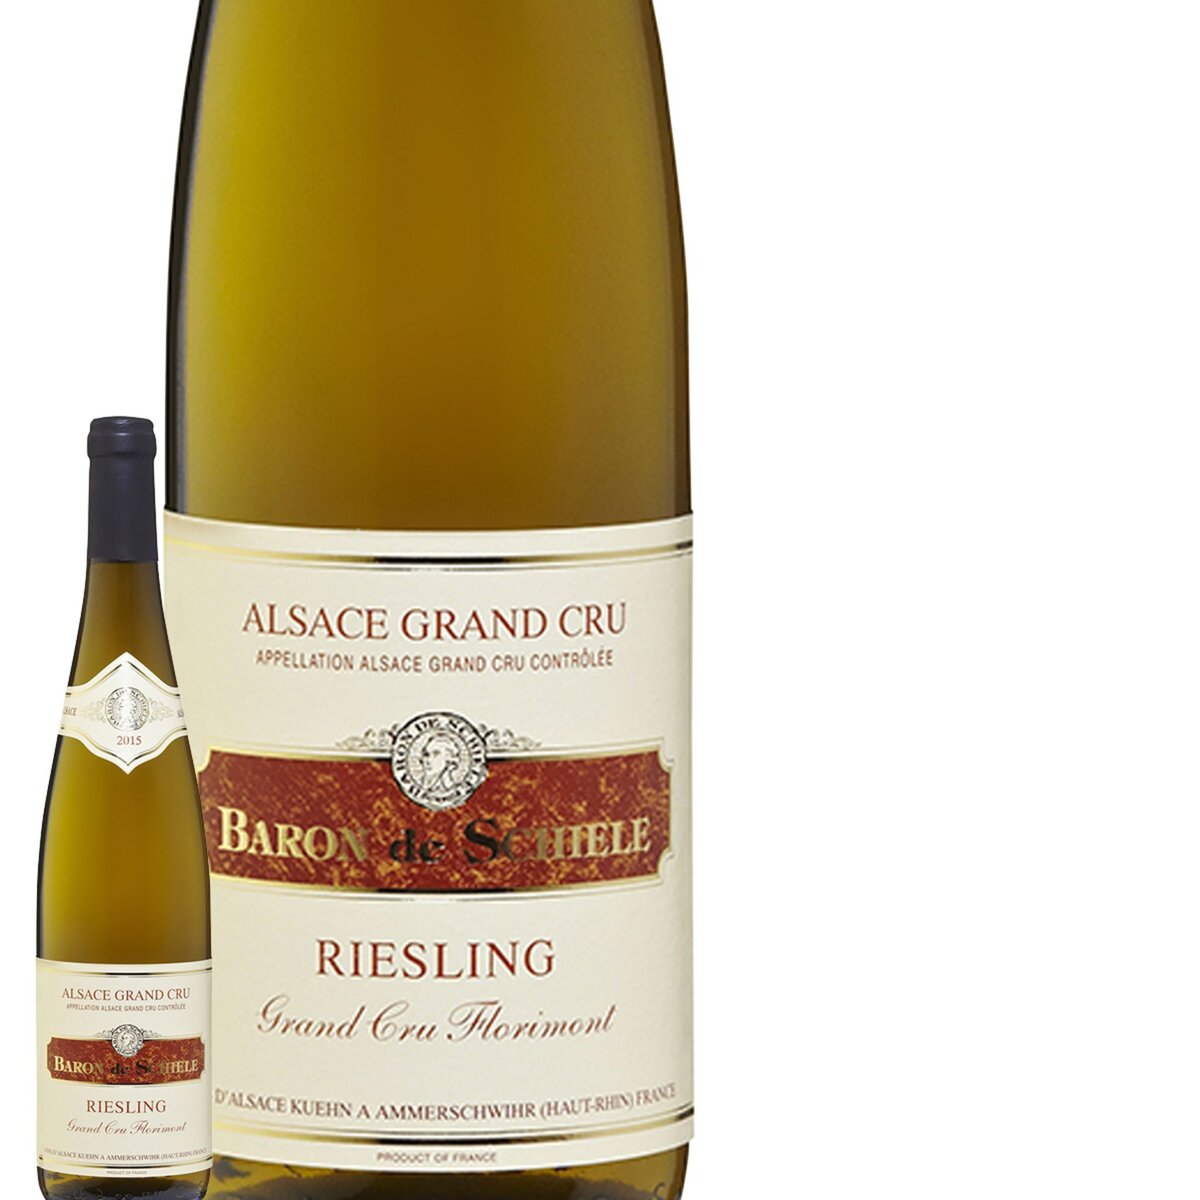 Baron de Schiele Alsace Riesling Florimont Blanc 2015